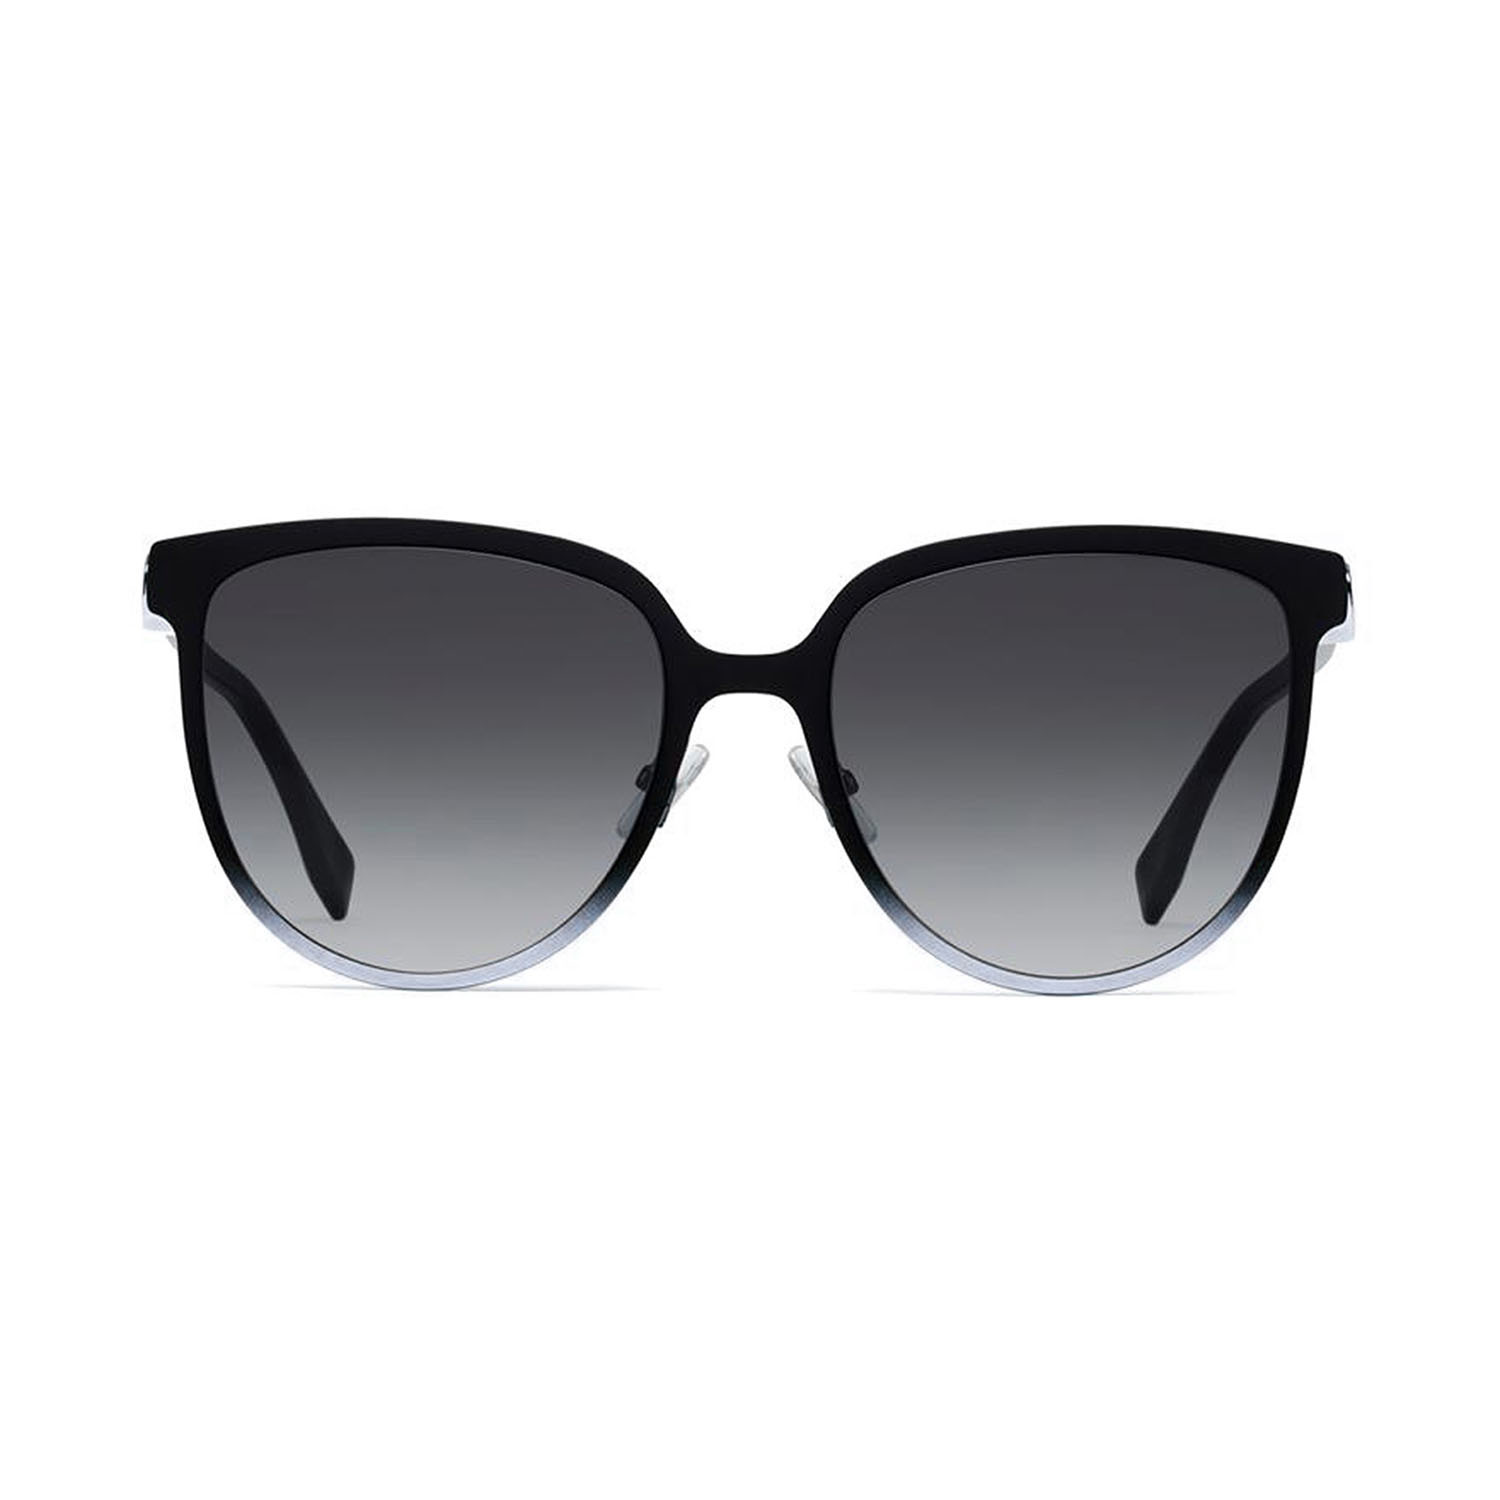 Fendi // Women's Sunglasses // Black + Gray Blue - Designer Women's ...